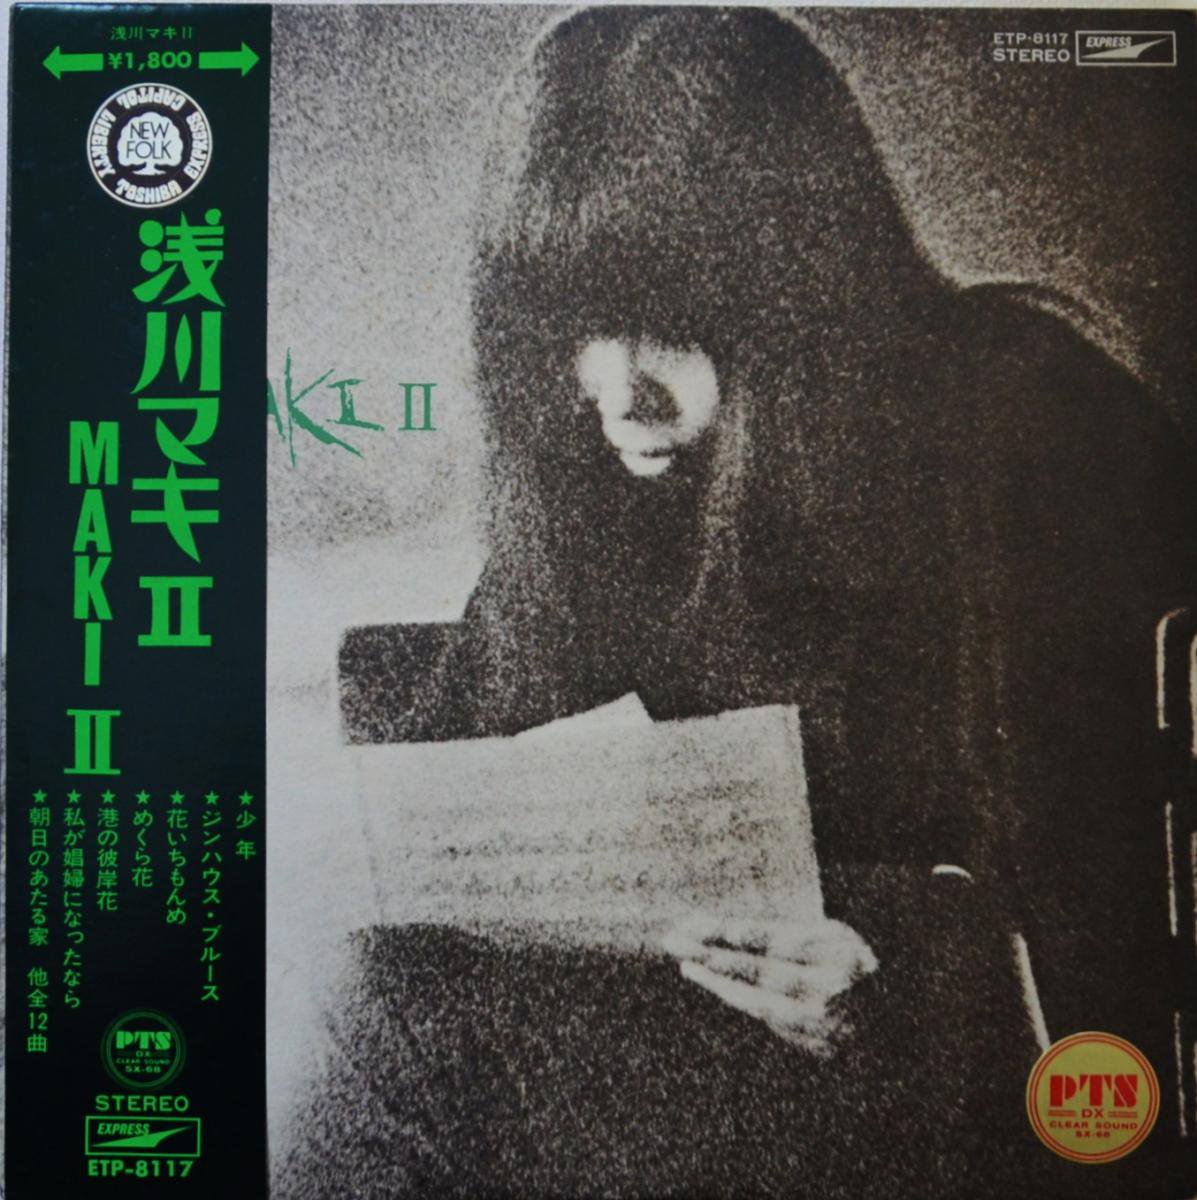 LP/浅川マキ『MAKI. Ⅱ』東芝音楽工業株式会社/ETP-8117 補充票付